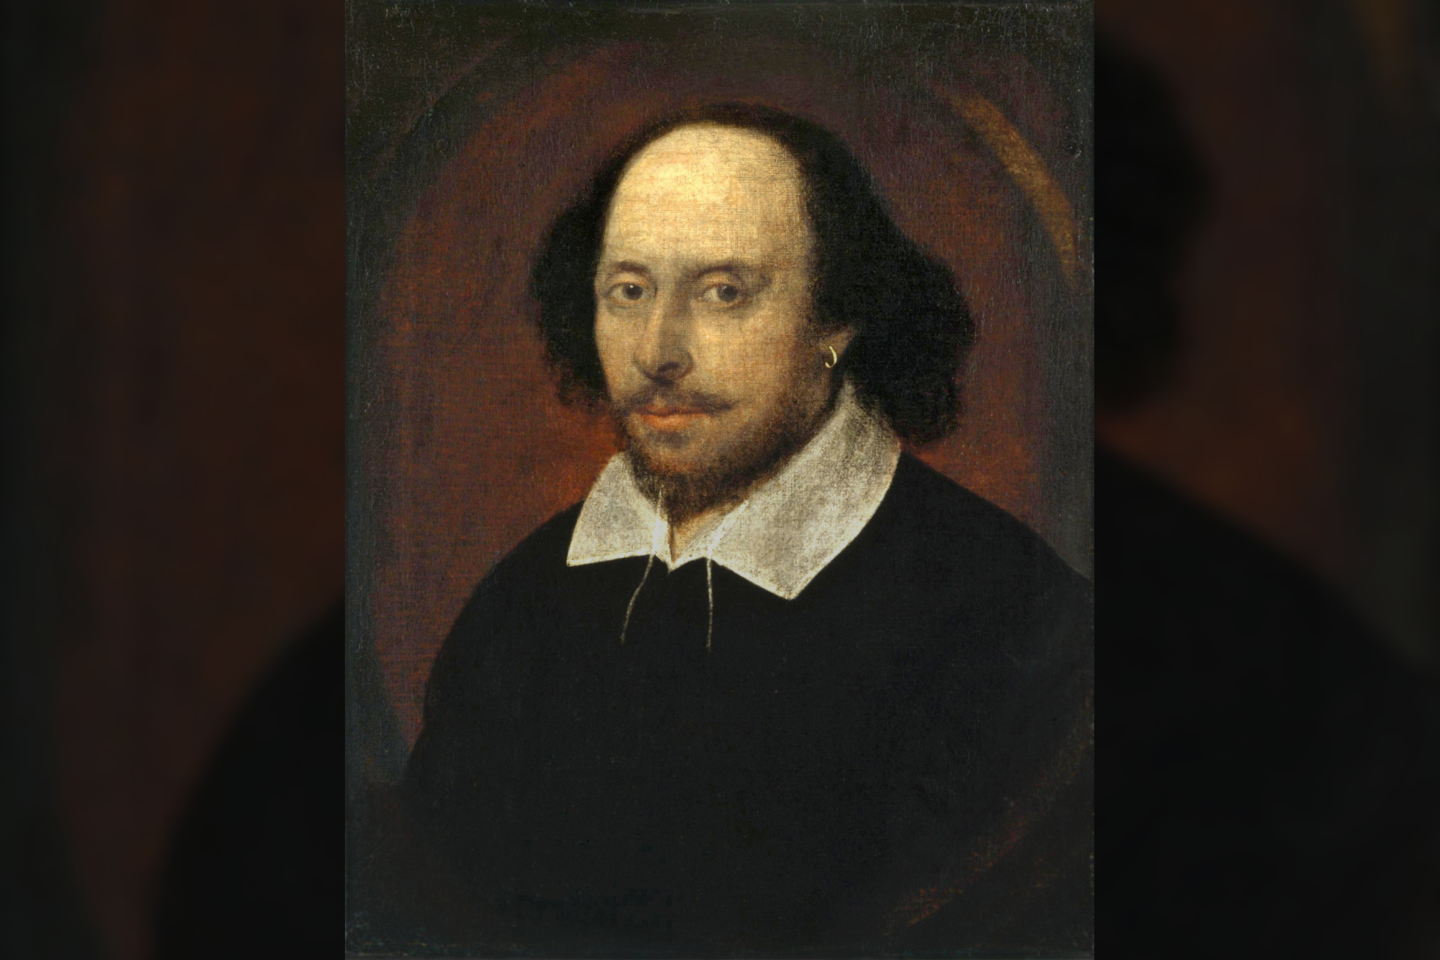  Williamas Shakespeare‘as neįtikėtinai talentingai ir tiksliai savo tragedijose aprašė depresiją ir šizofreniją.<br>  John Taylor pav.